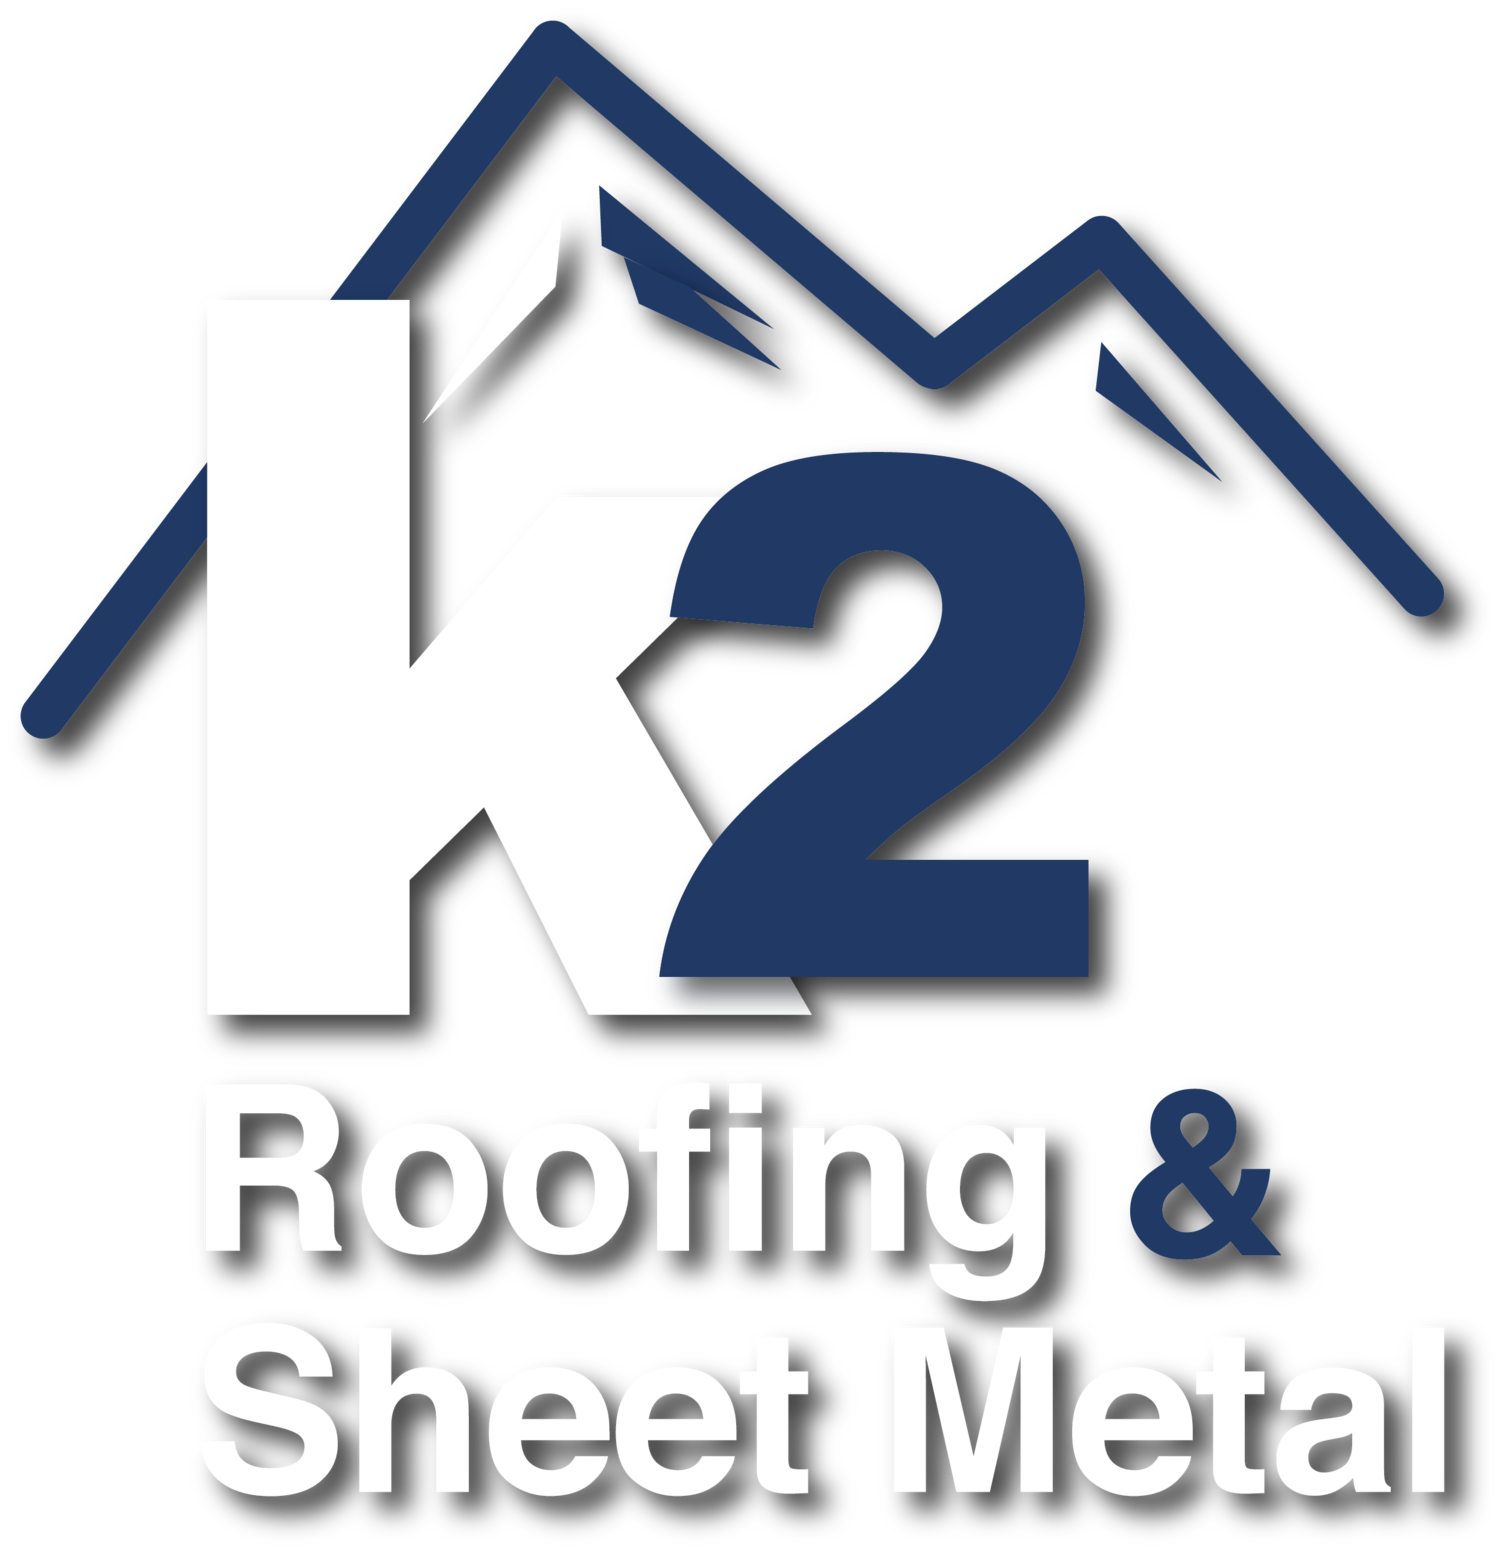 K2 Roofing & Sheetmetal